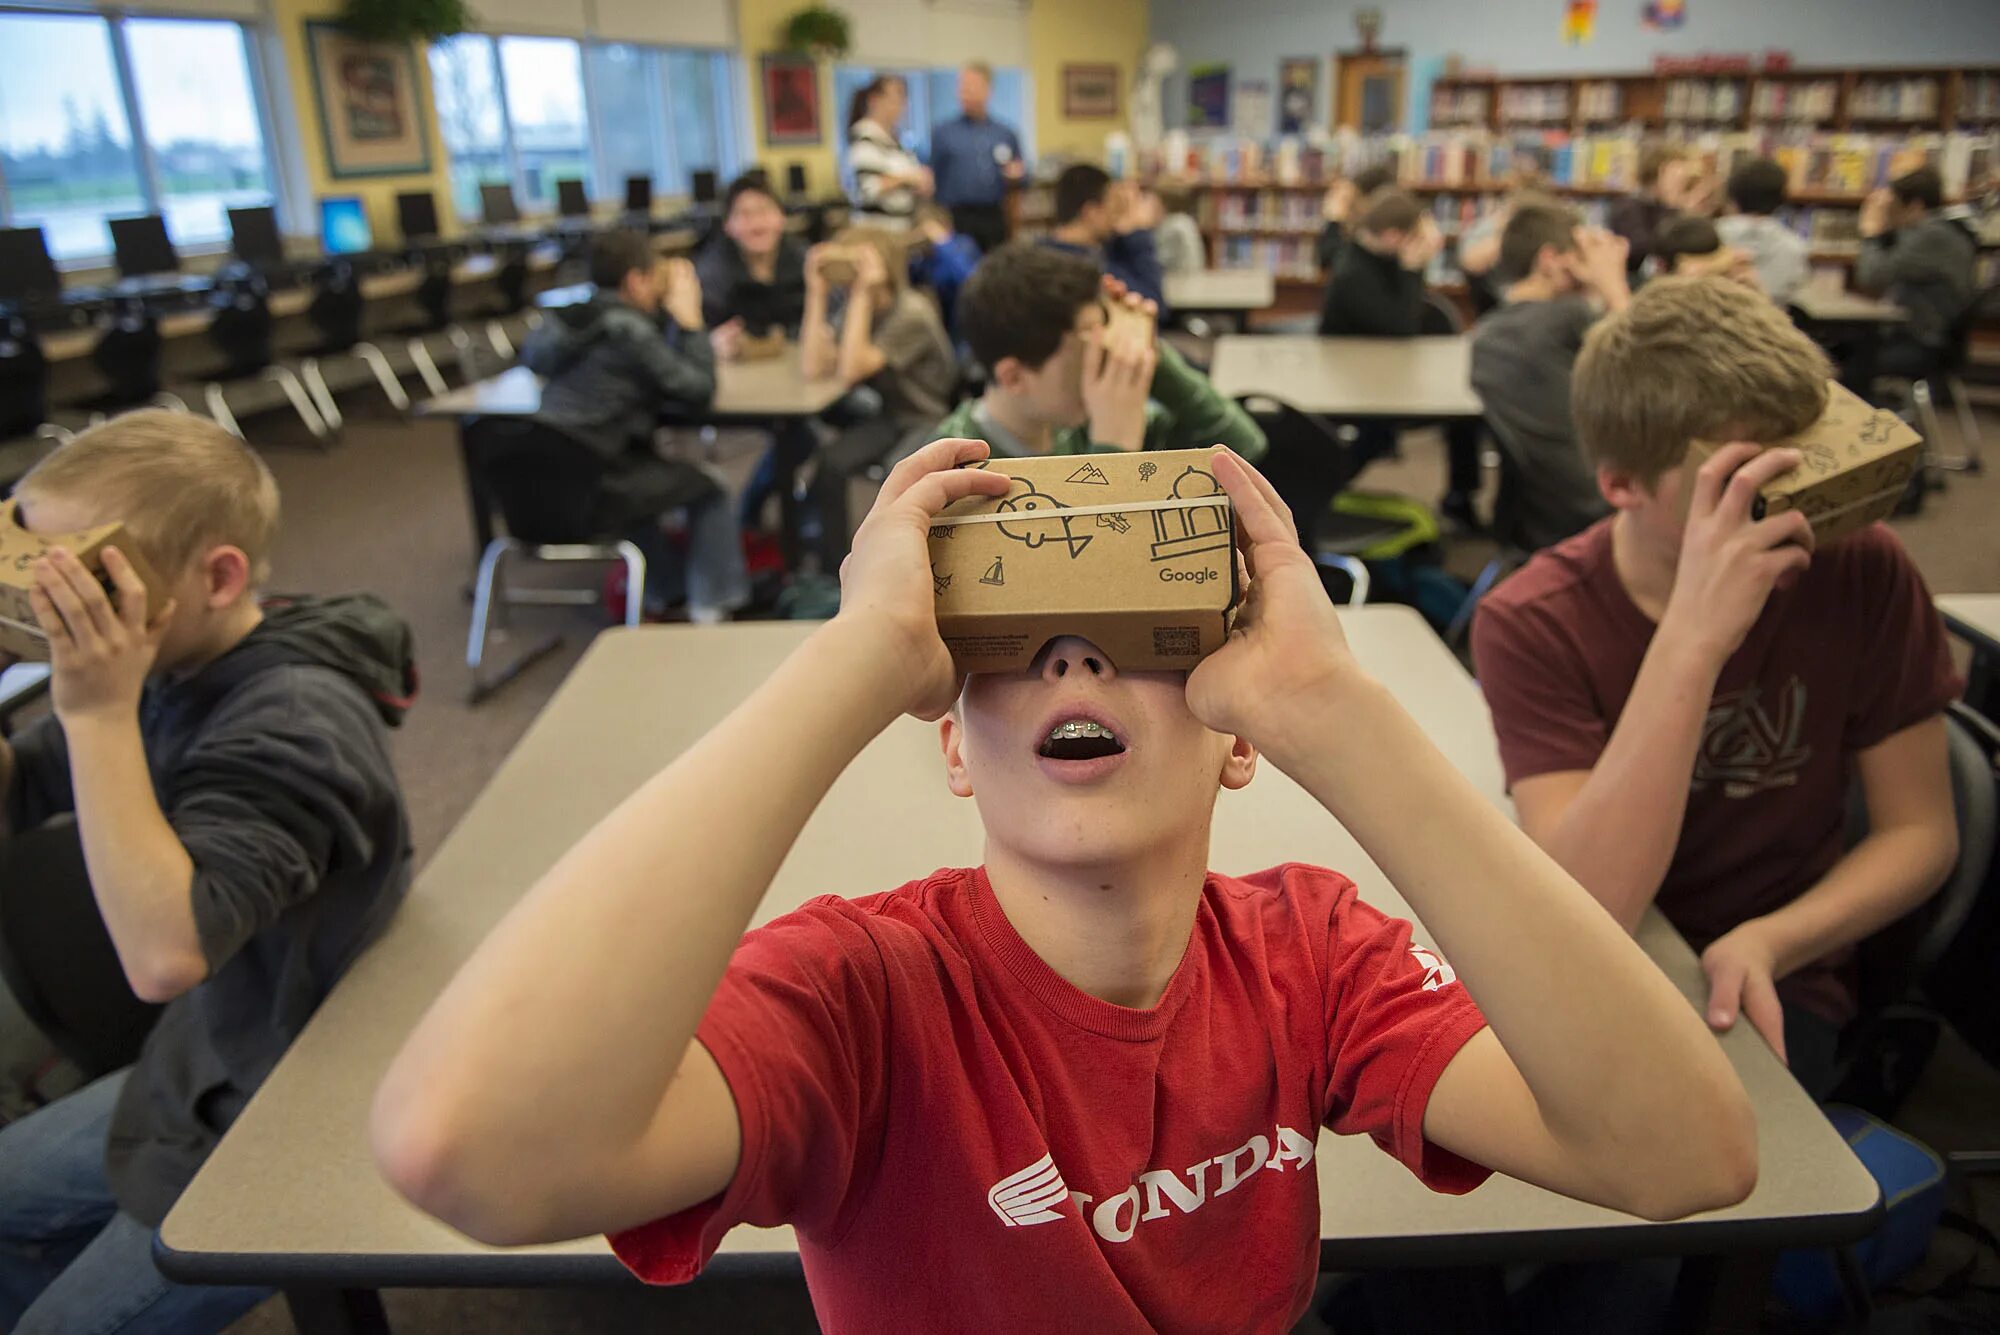 Школа vr. Виртуальная реальность в учебе. Шлем виртуальной реальности в школе. Очки виртуальной реальности в школе. Школьники в ВР.